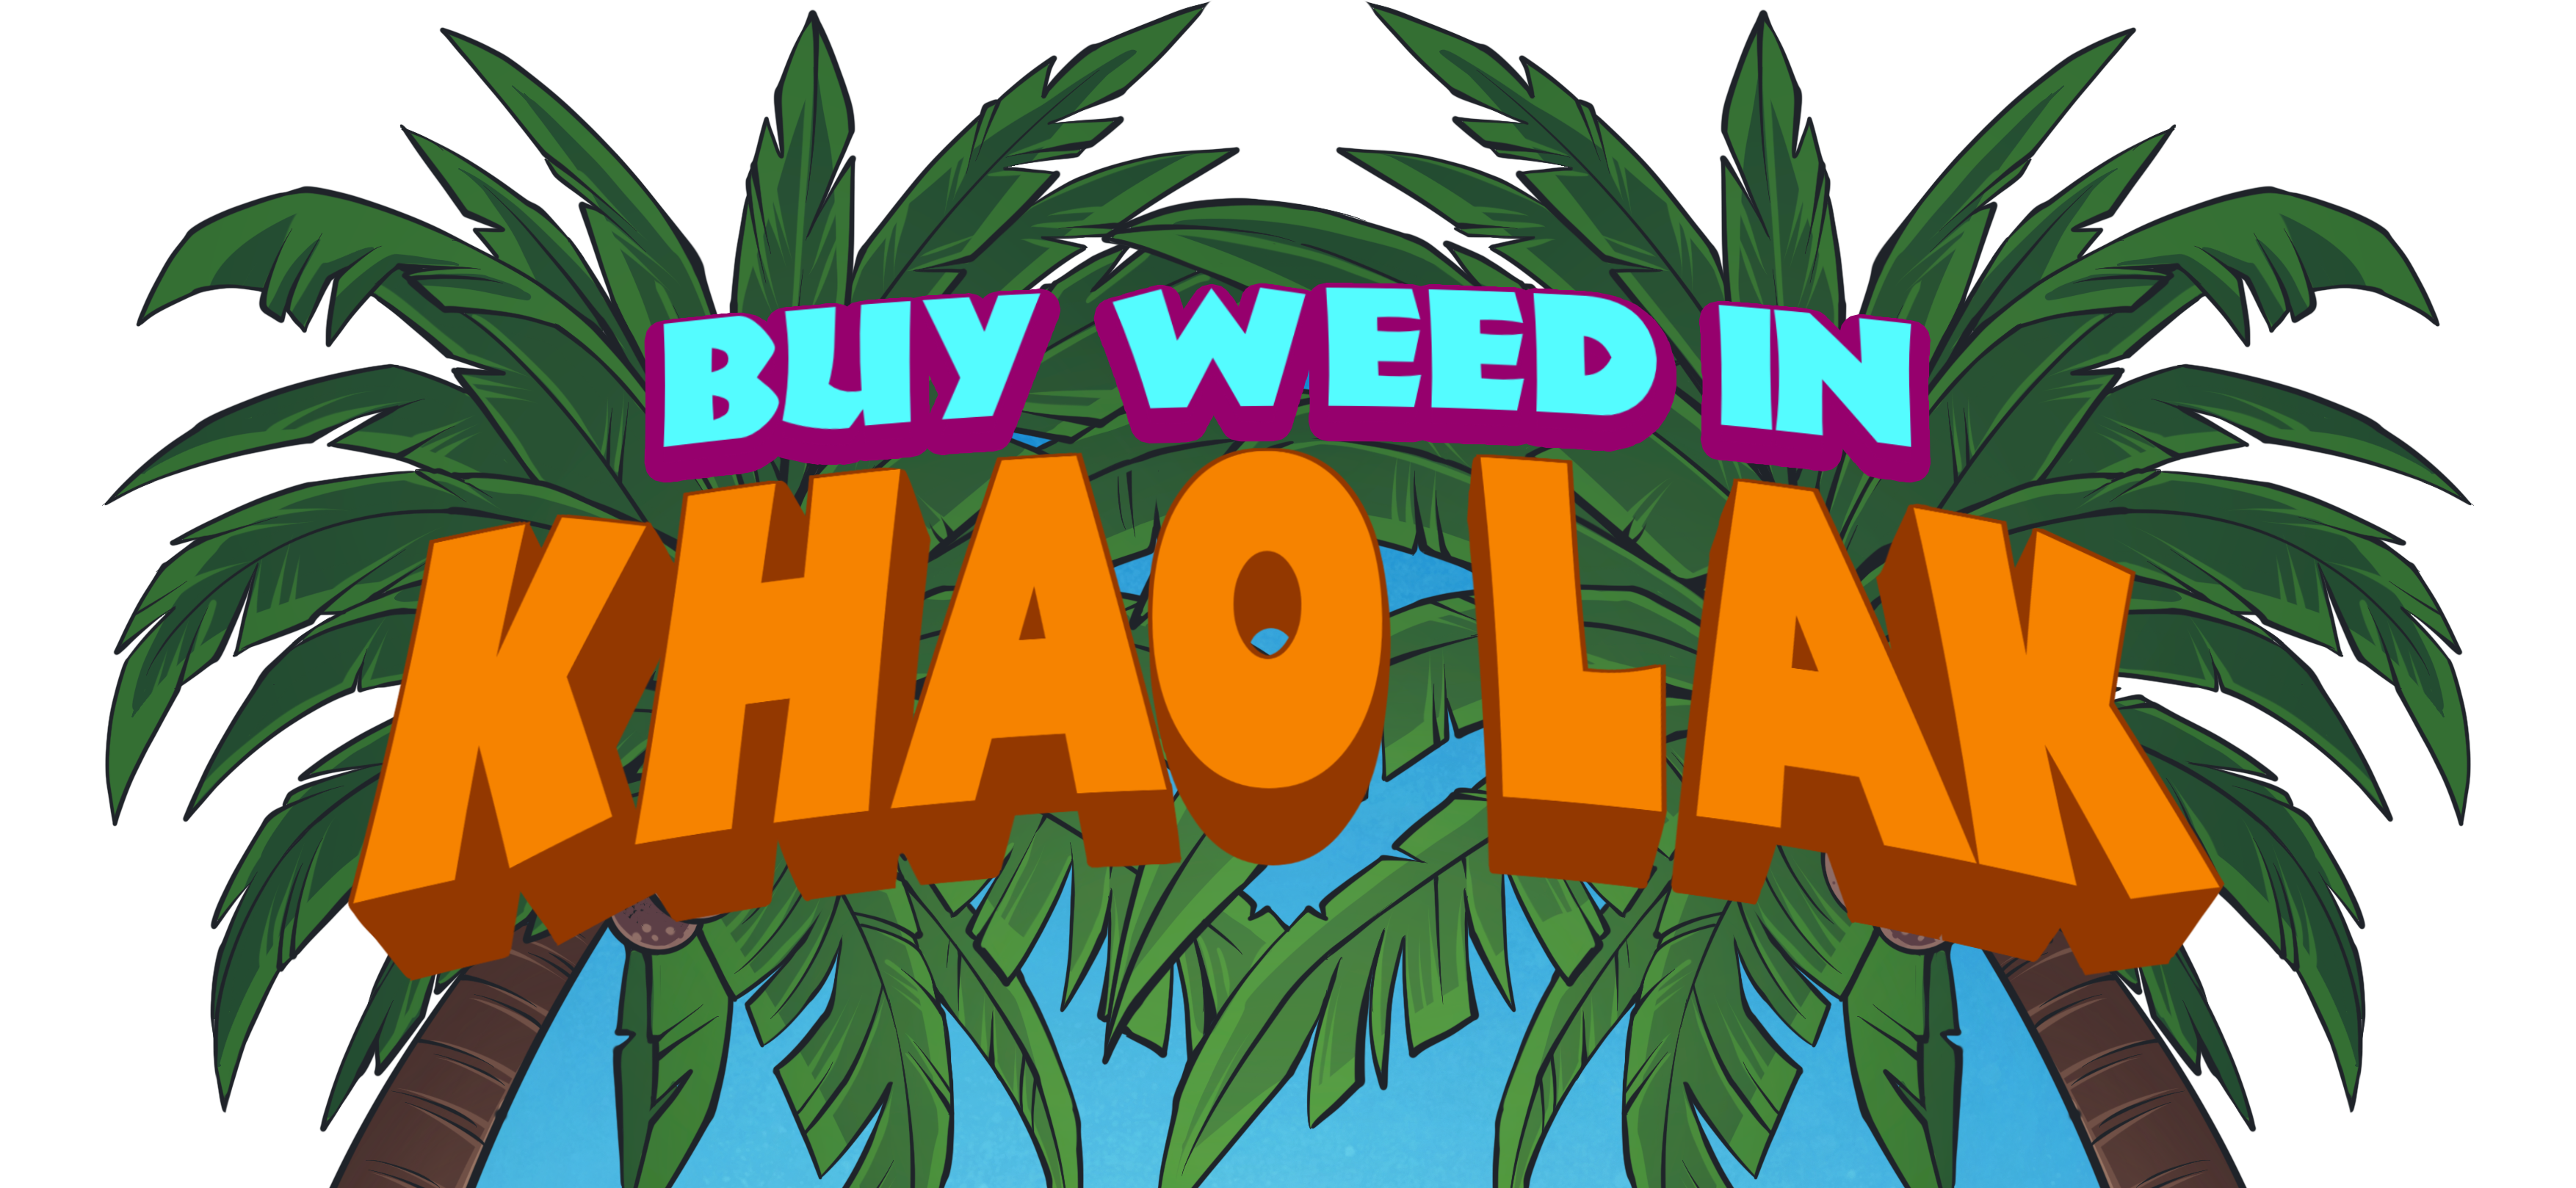 Buy Weed In Khao Lak